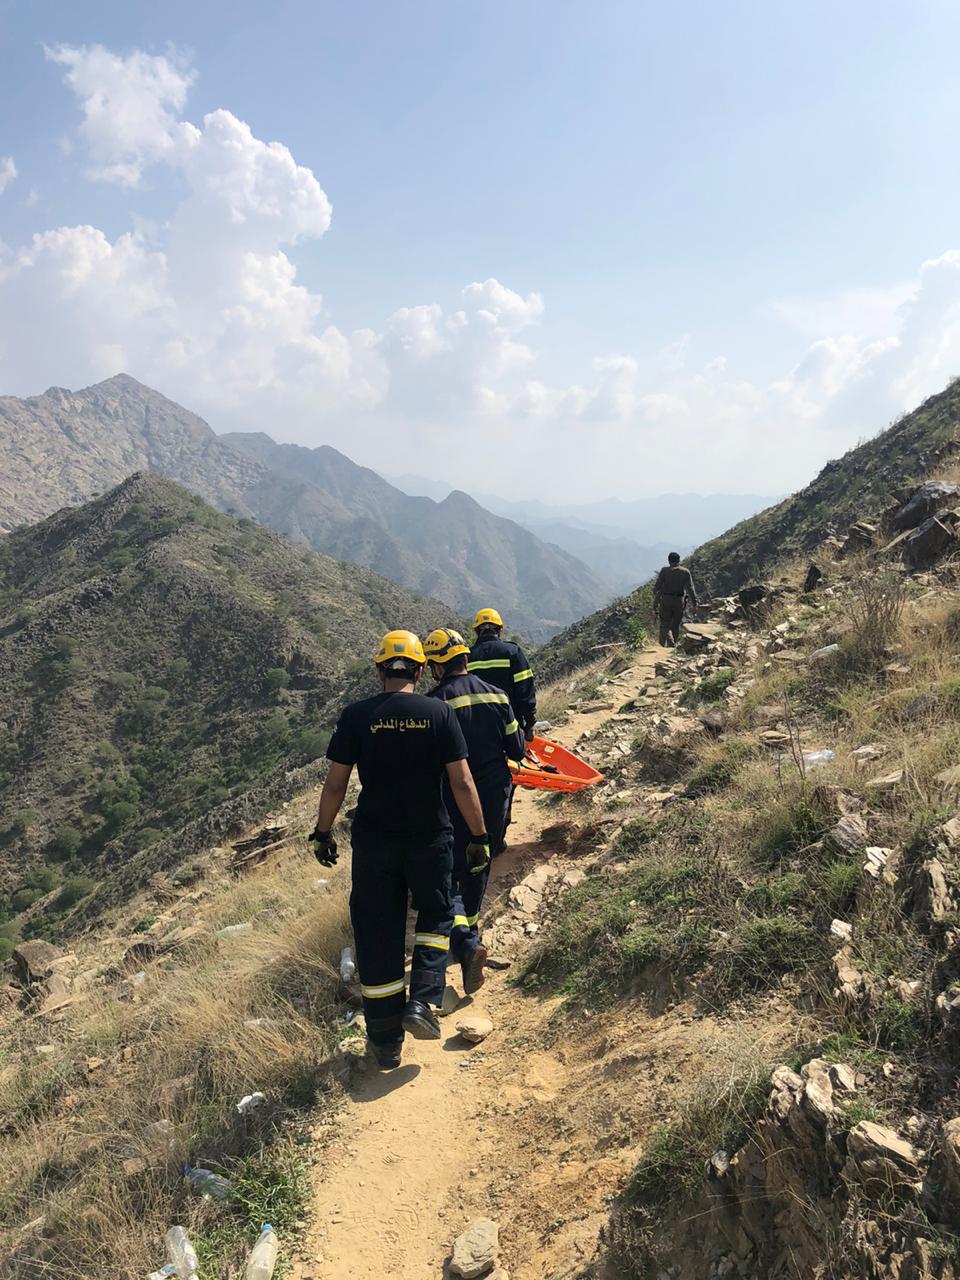 وفاة متسللين سقطا من منحدر جبلي في #فيفا